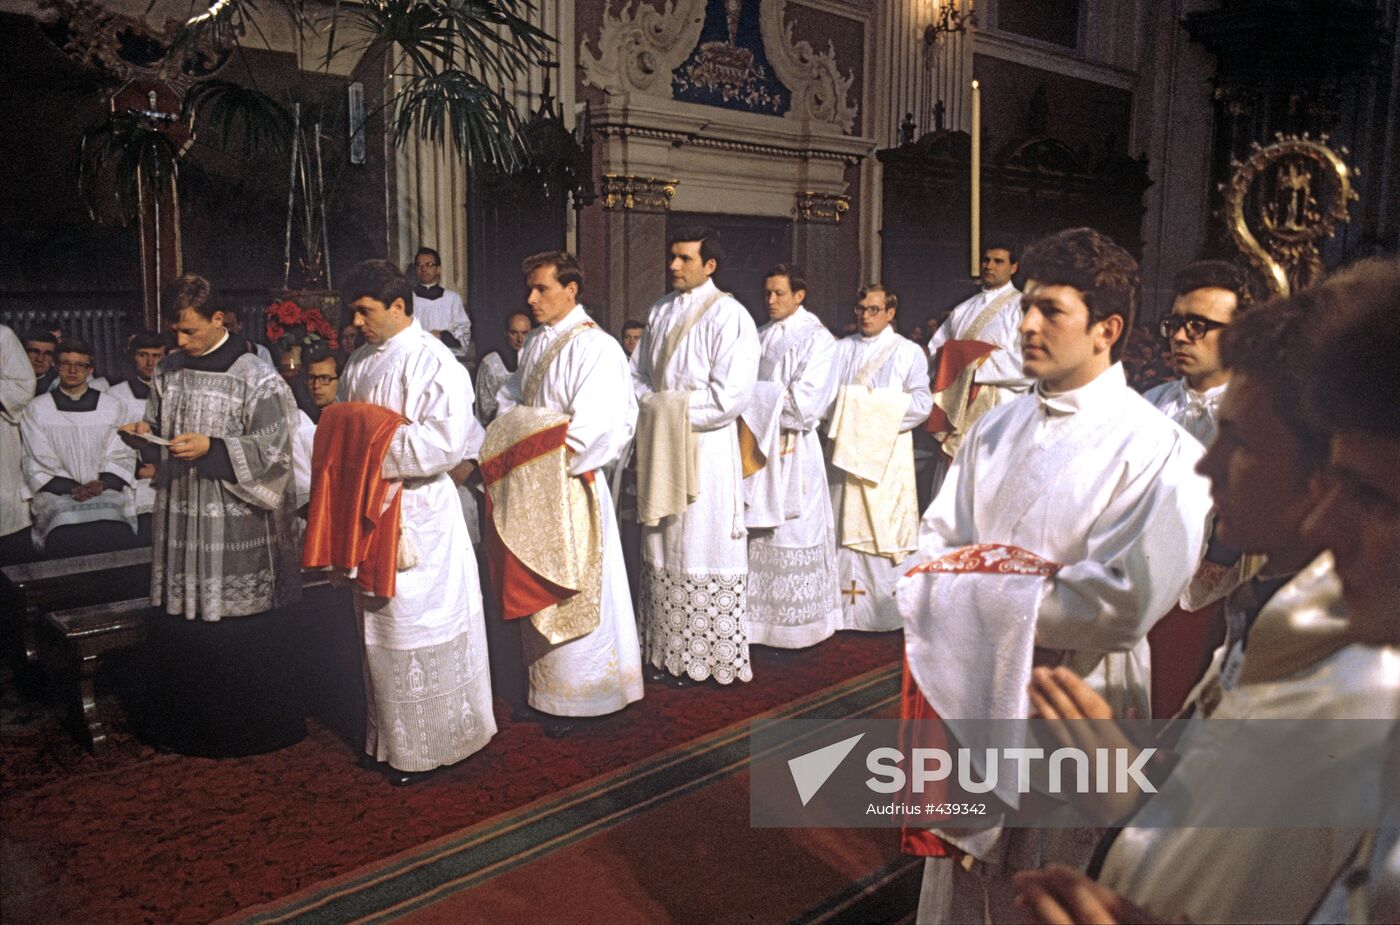 Ordination to Roman Catholic priests